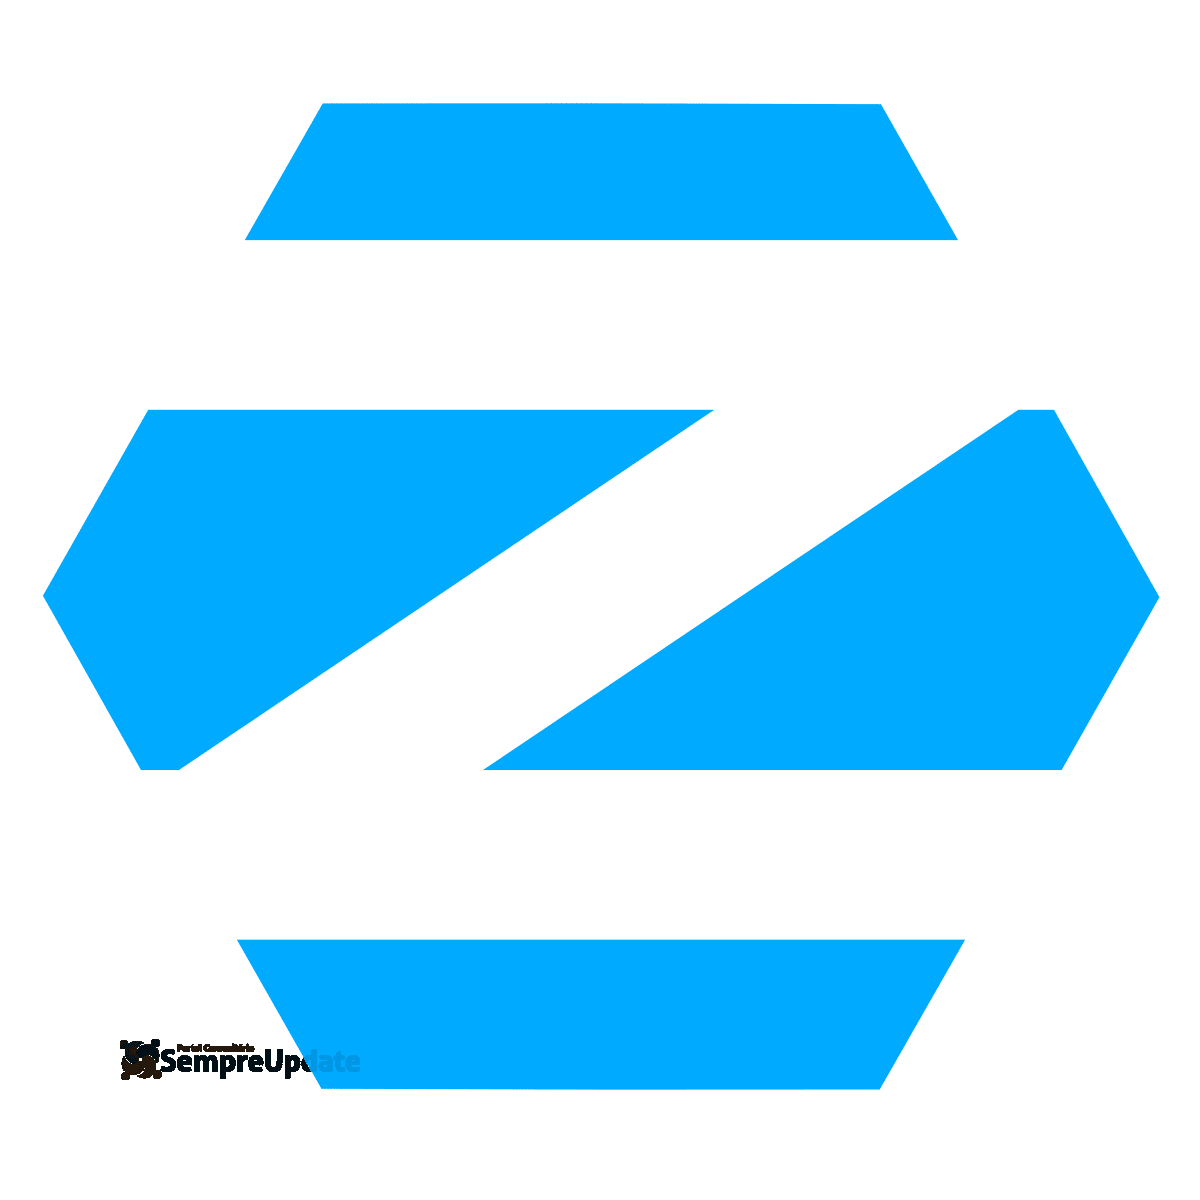 Zorin OS 15 e Enso OS oficialmente lançados